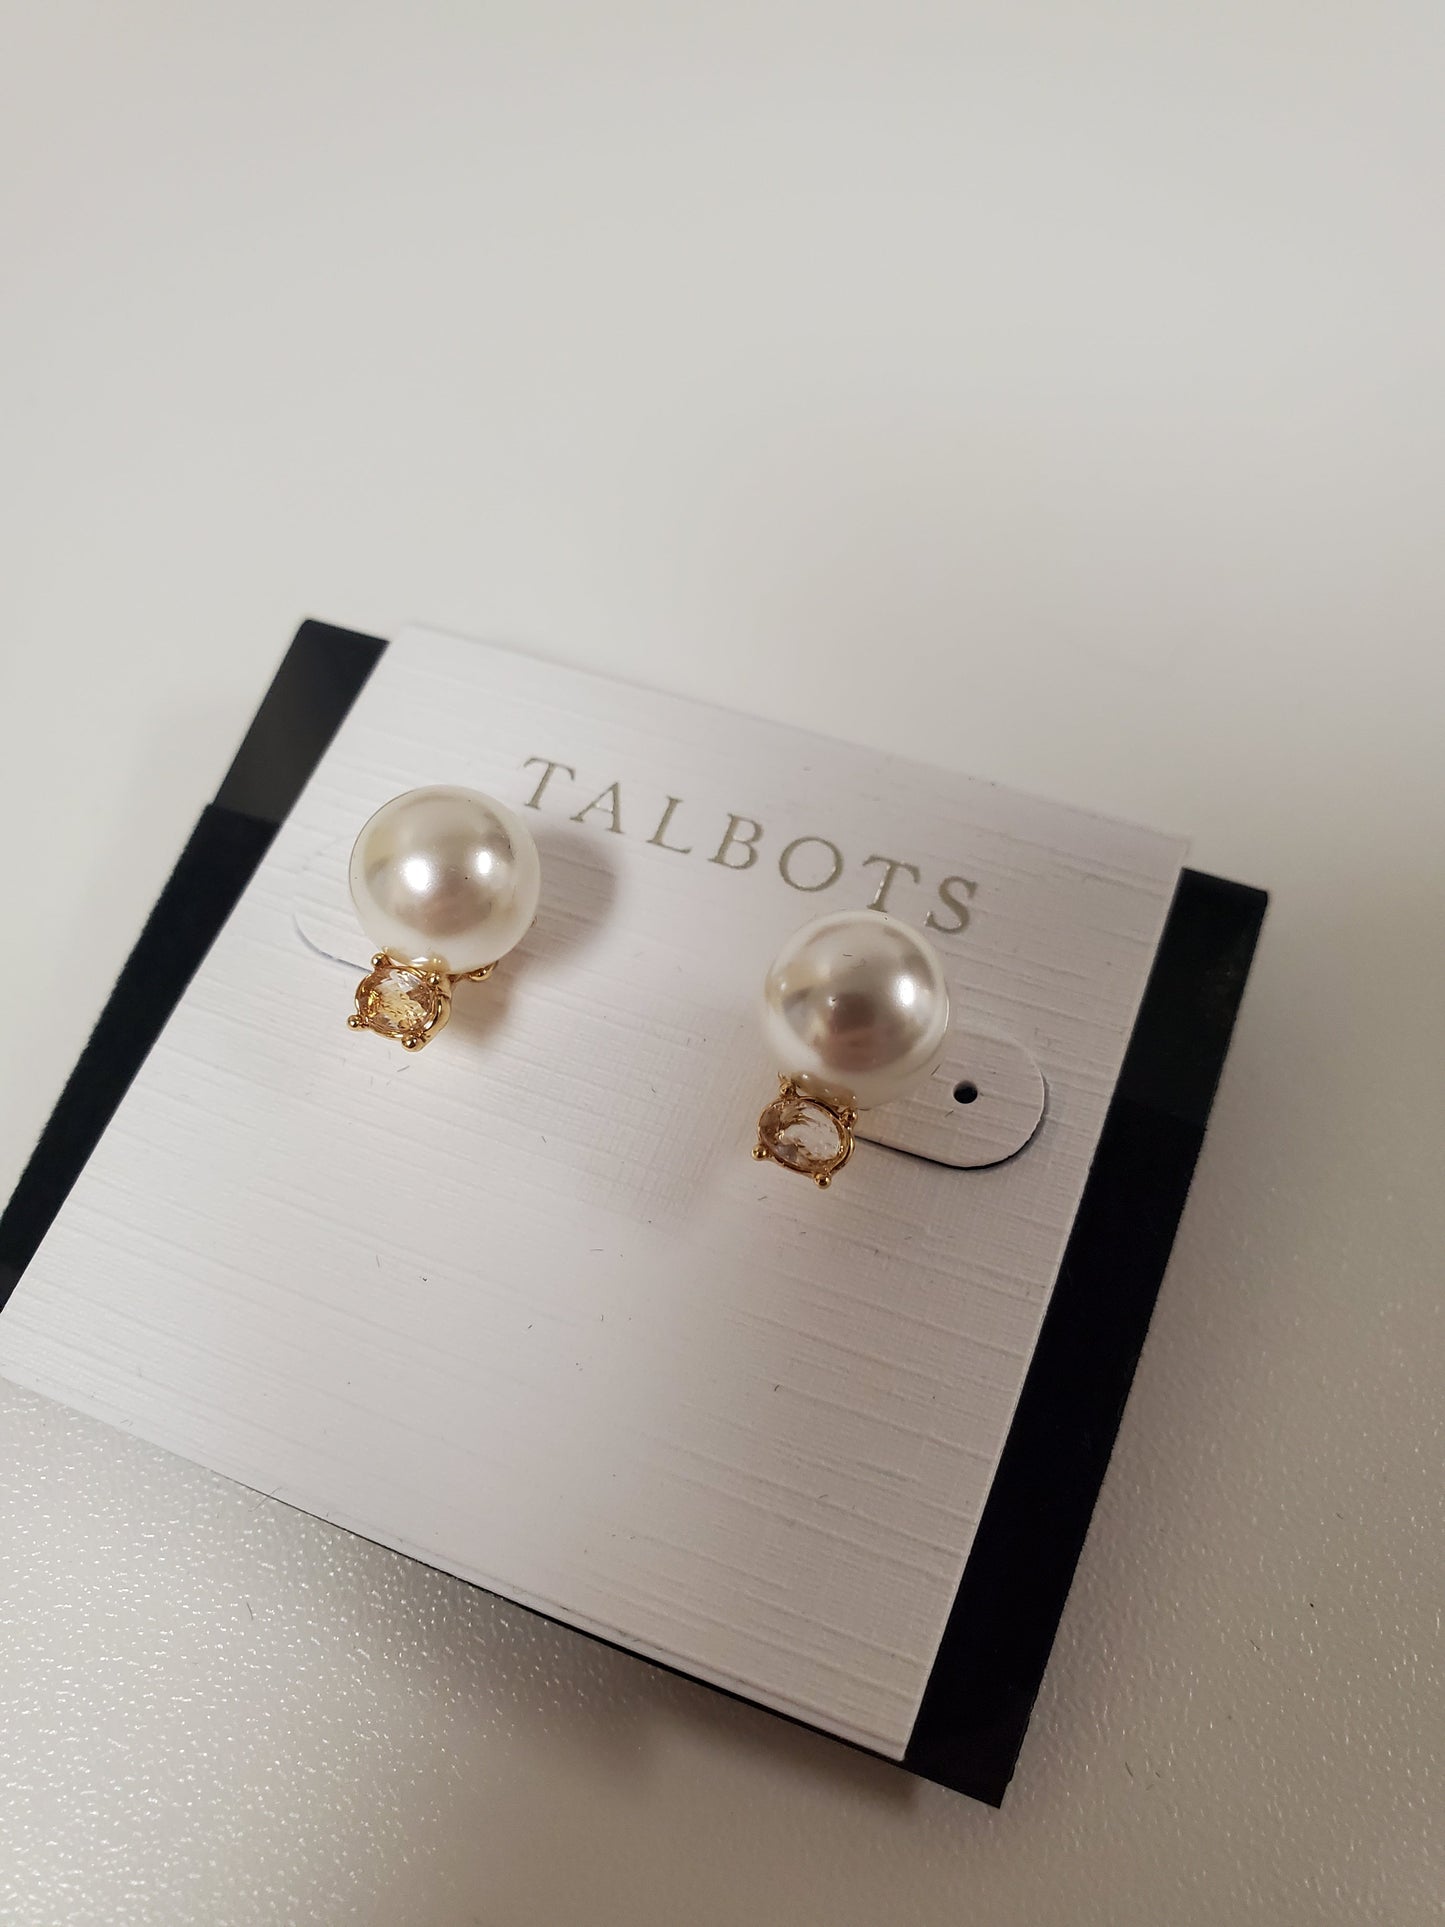 Earrings Stud By Talbots